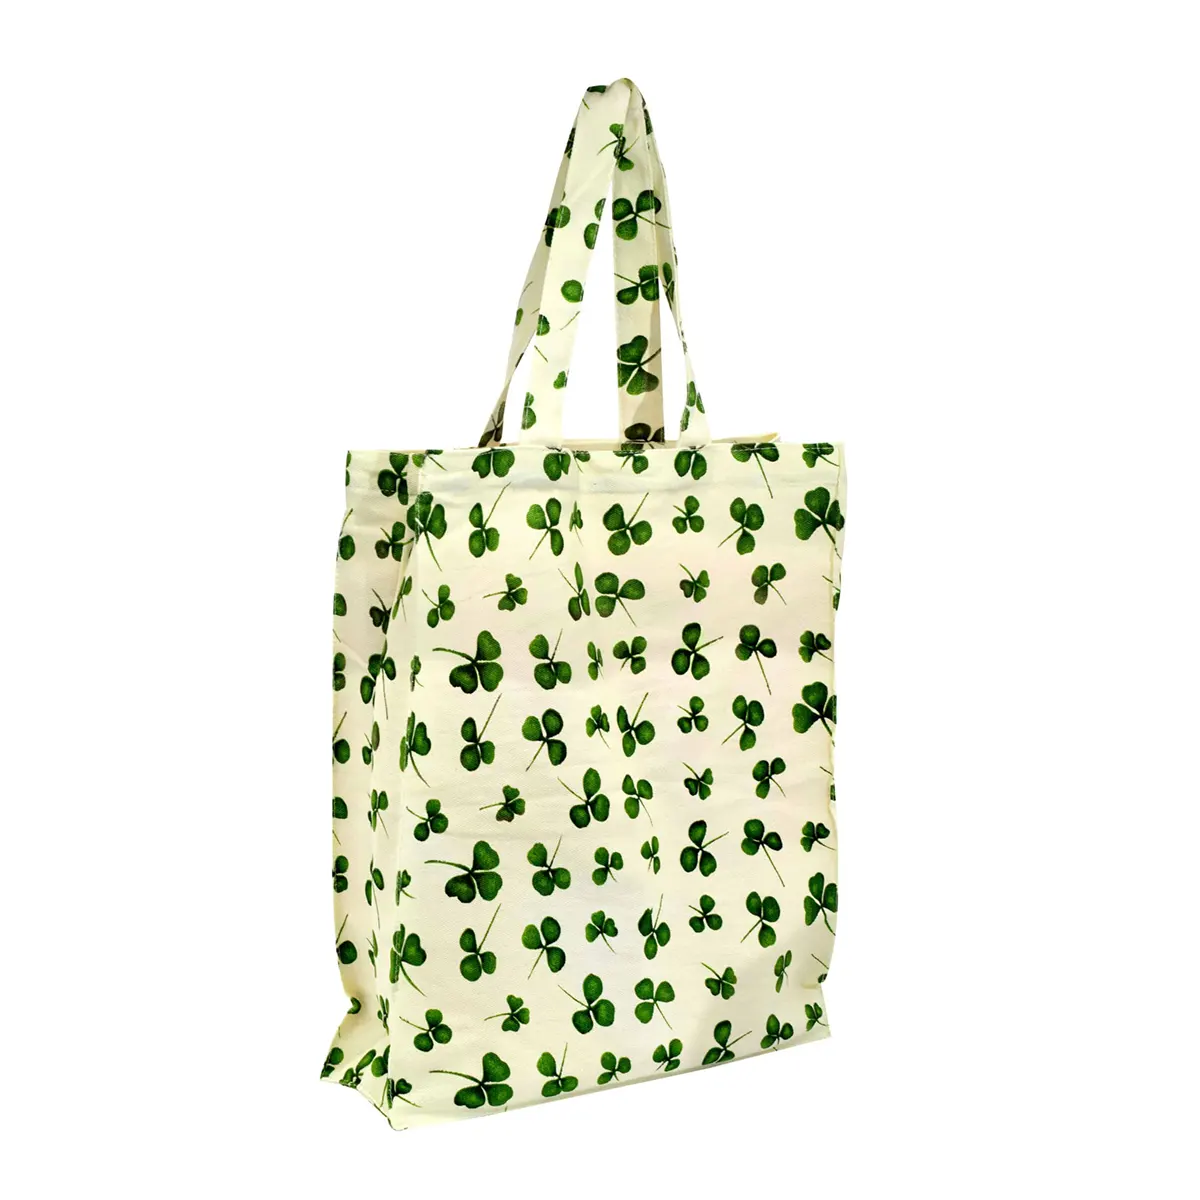 Shamrock Shopping Bag -  irische Kleeblatt Einkaufstasche / Stoffbeutel